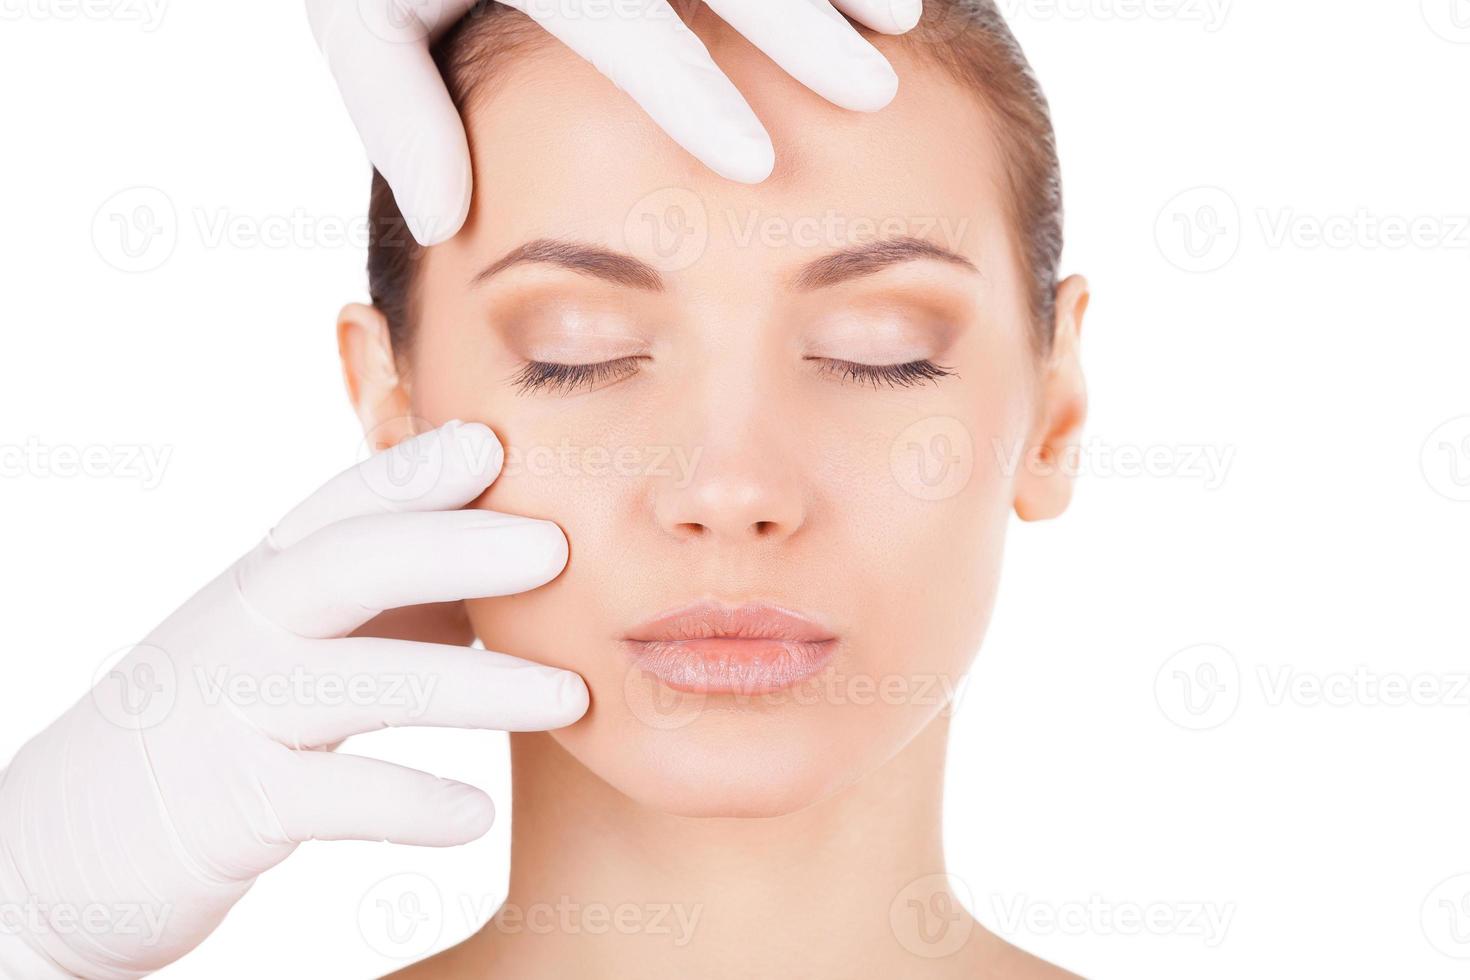 Vorbereitung vor Gesichtsoperationen. Schöne junge Frau, die die Augen geschlossen hält, während der Arzt in medizinischen Handschuhen ihr Gesicht isoliert auf Weiß untersucht foto